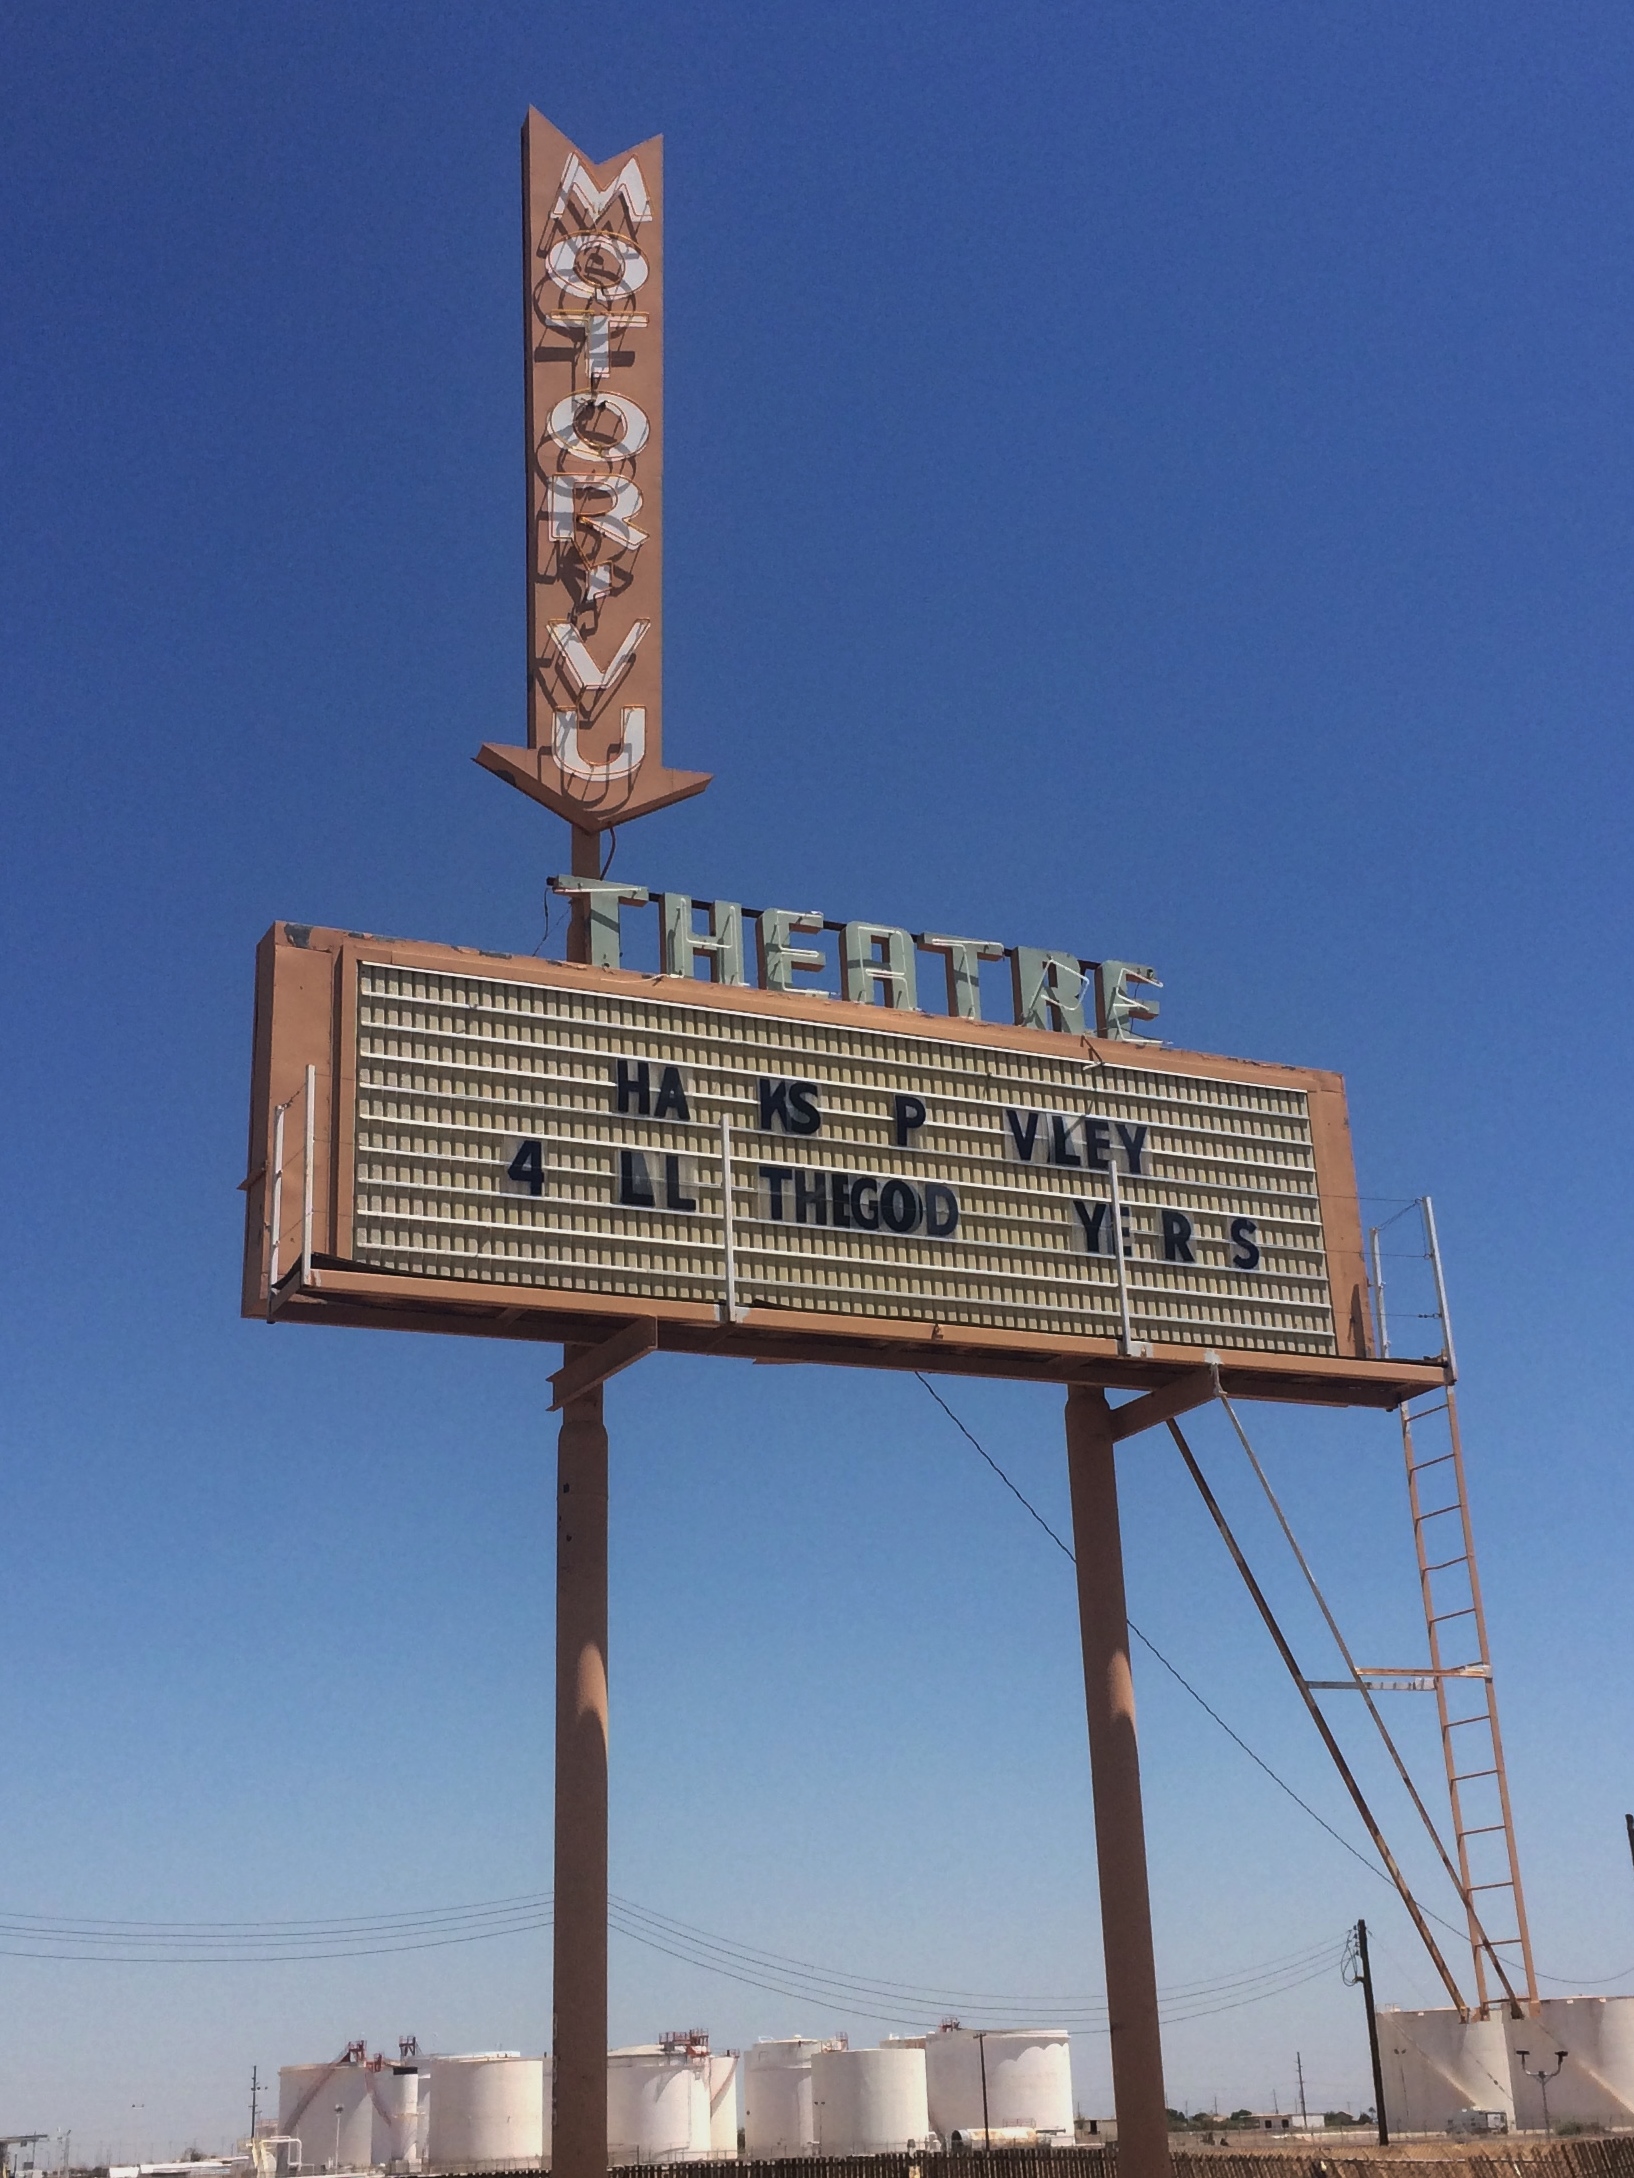 Motor-Vu Theatre - 385 West Aten Road, Imperial, California U.S.A. - August 8, 2017